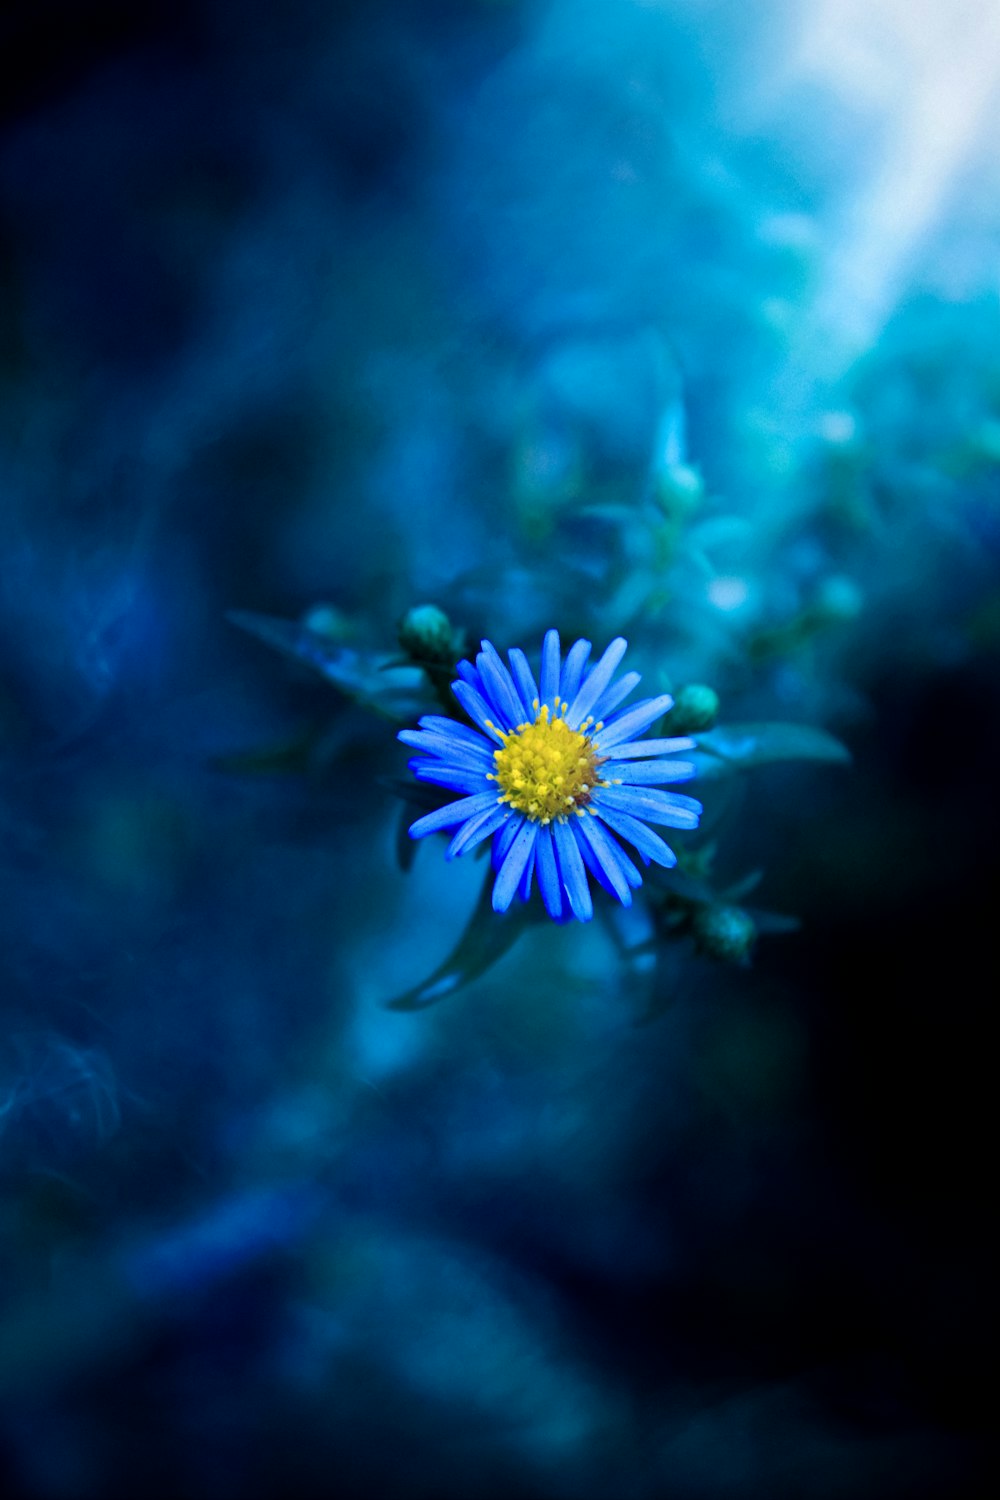 Una pequeña flor azul con un centro amarillo